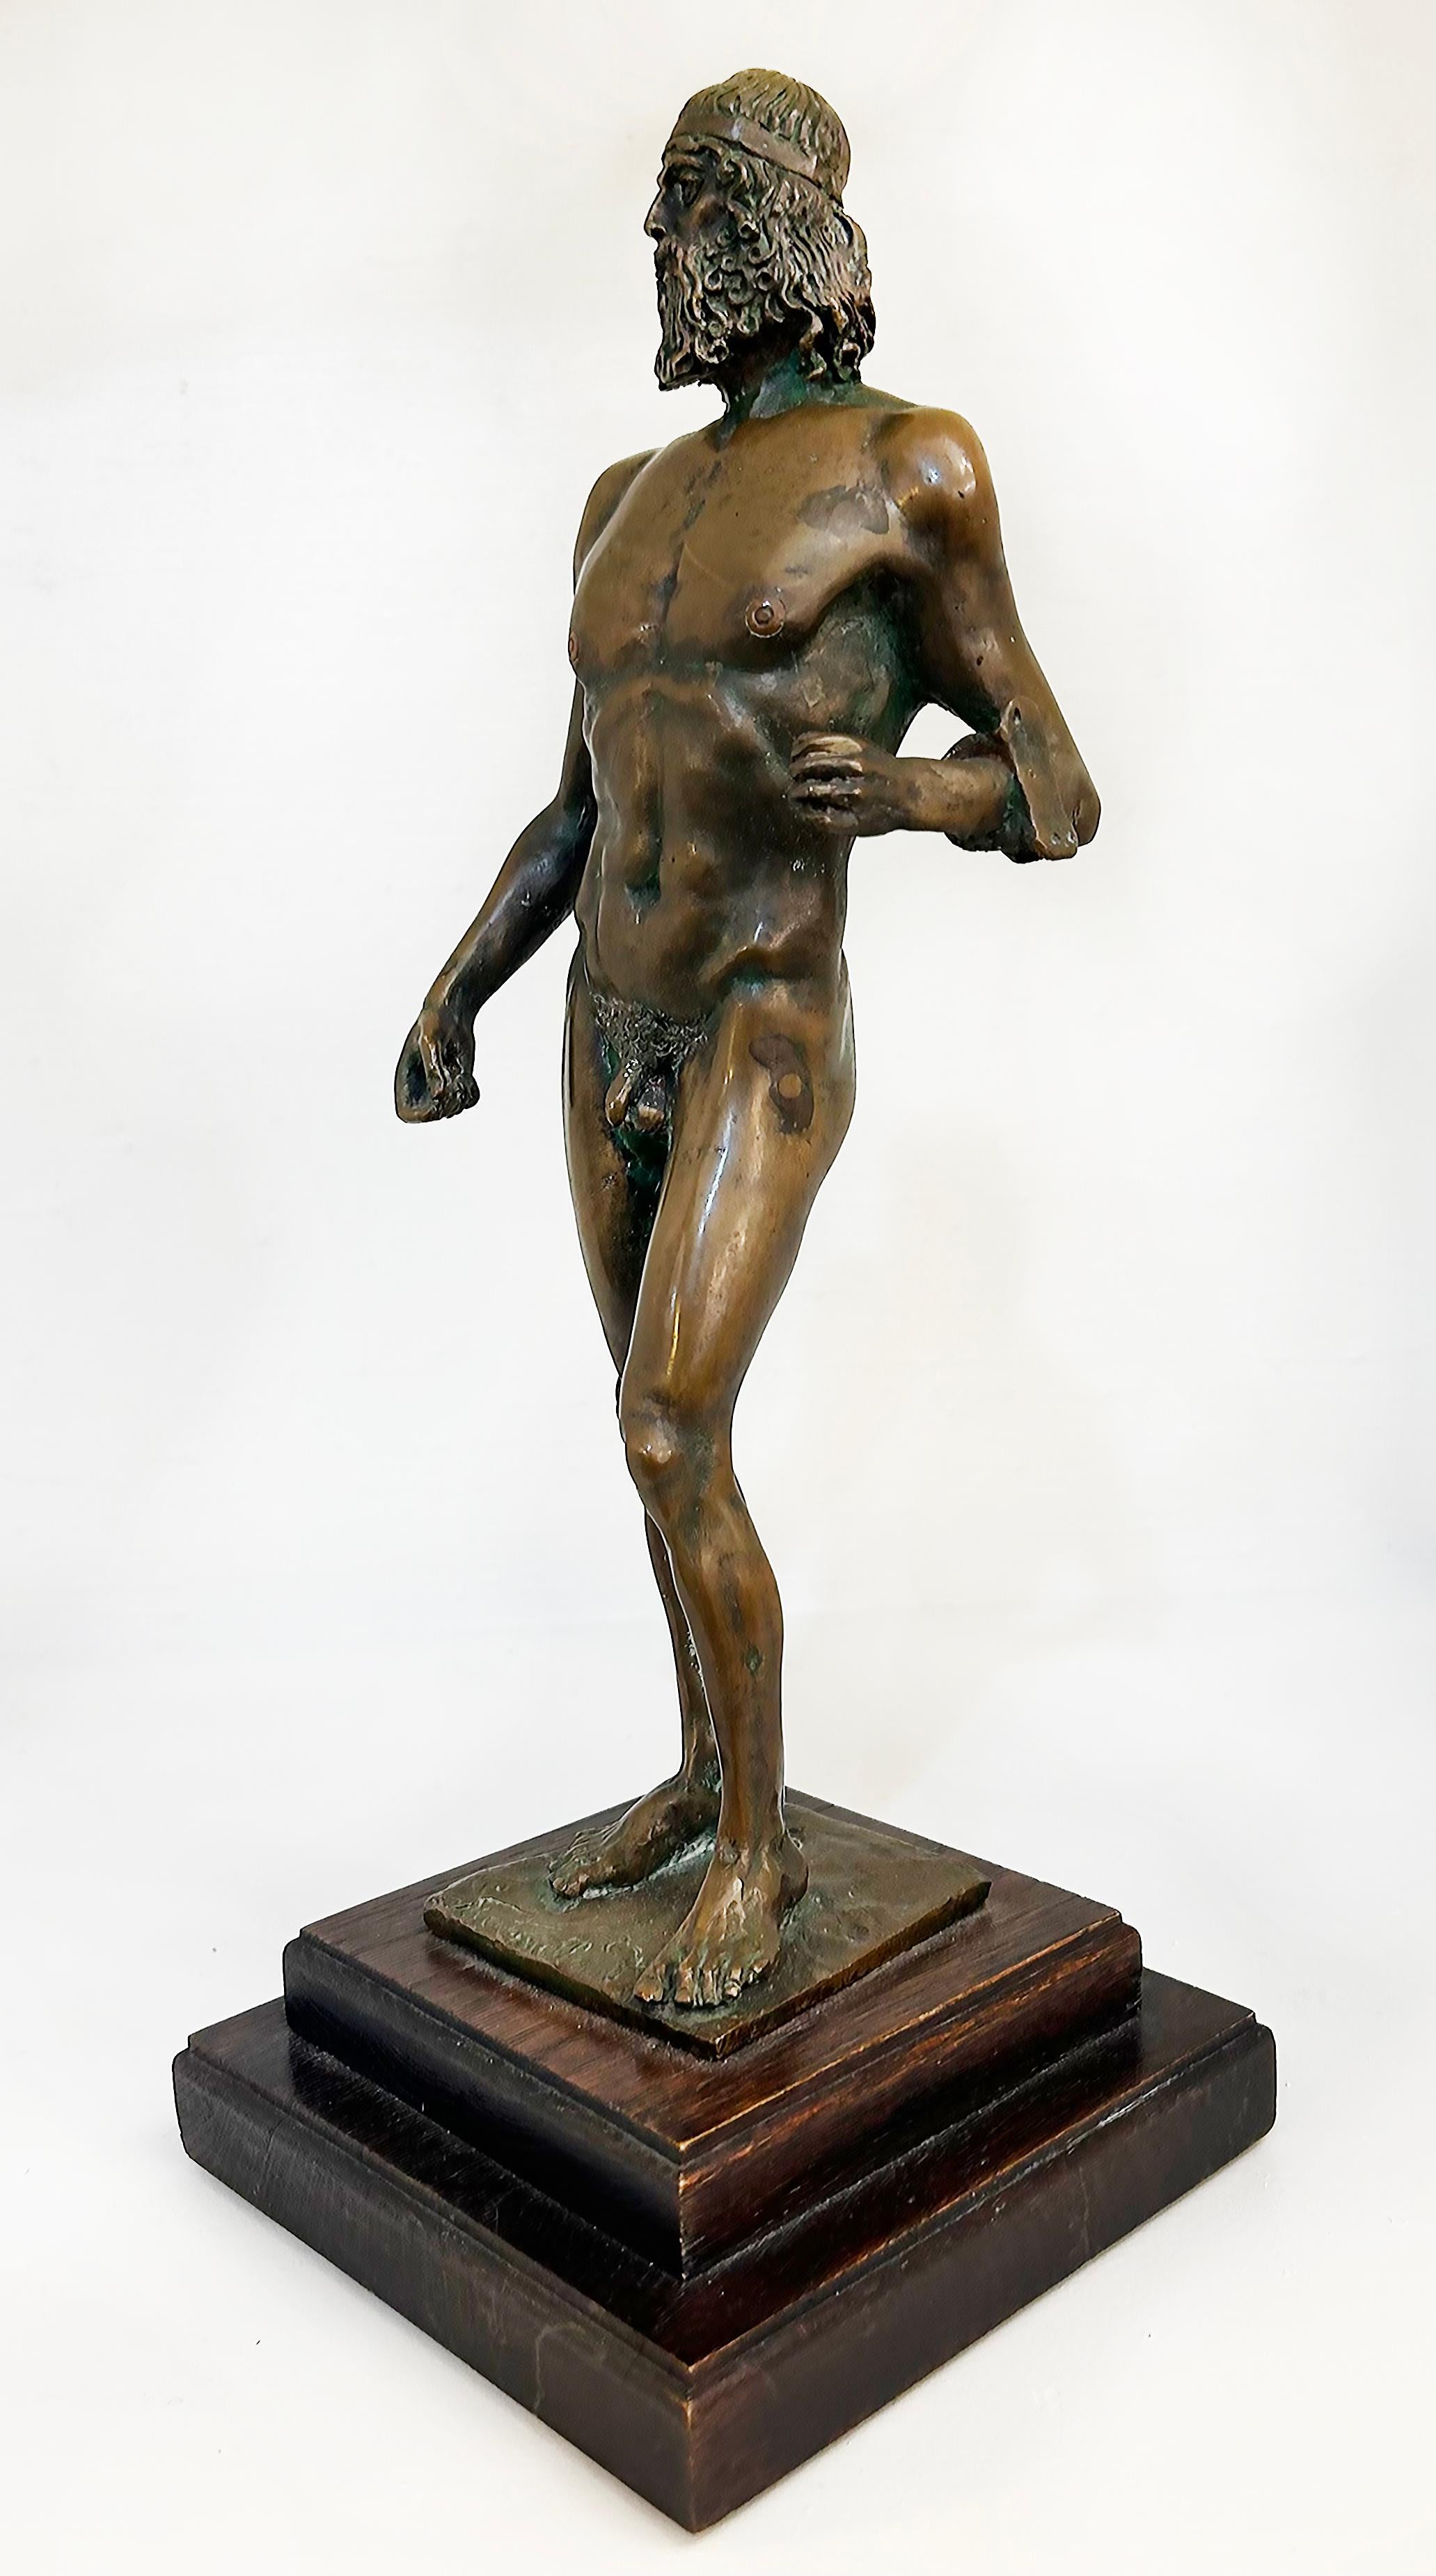 Statue de guerrier Riace en bronze italien des années 1980 signée Pintoneilo

Nous proposons à la vente une statue en bronze datant des années 1980 de l'ancienne sculpture du Guerrier de Riace. Ce bronze est extrêmement bien réalisé avec des détails